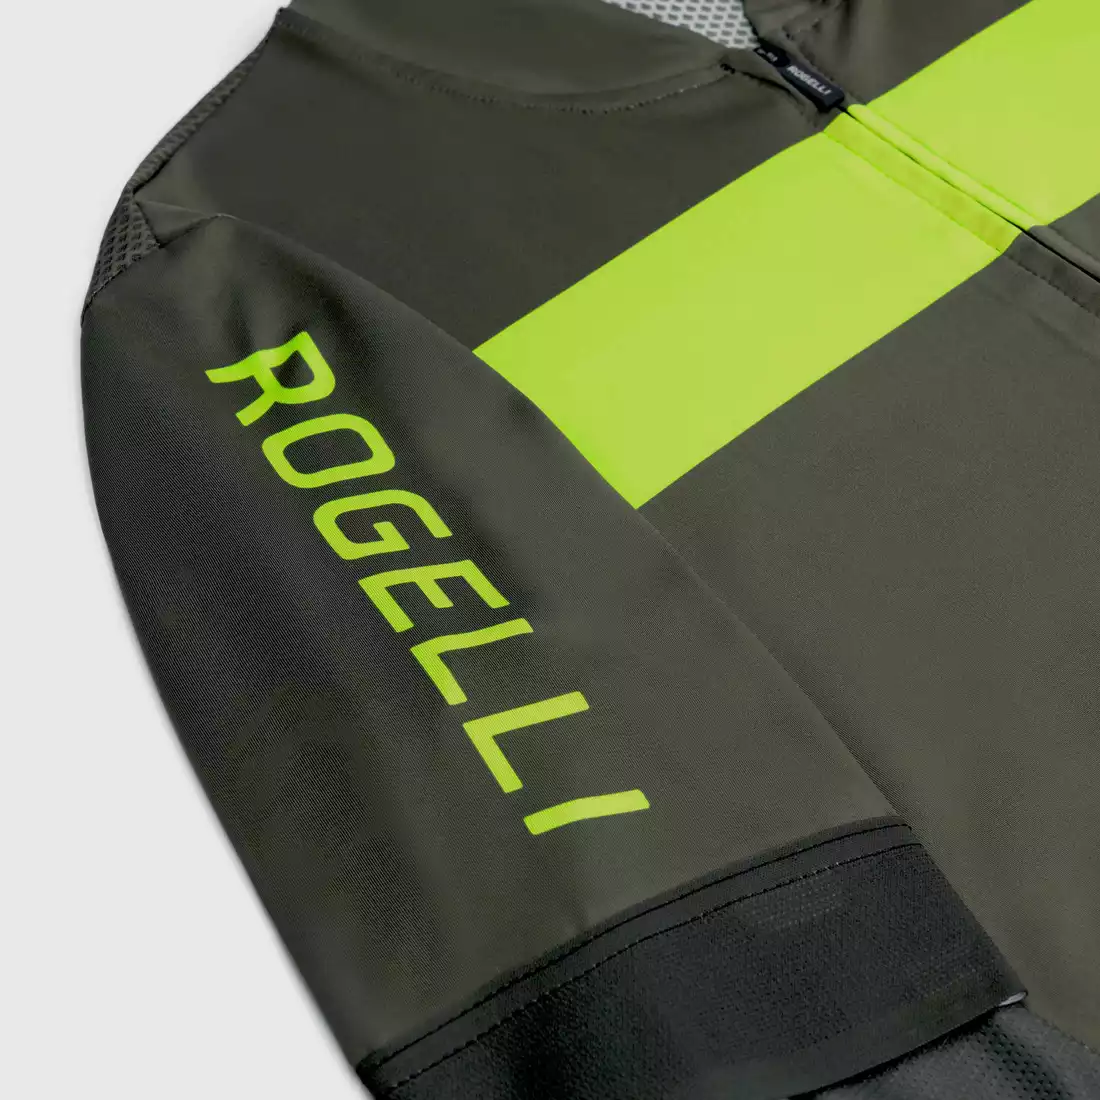 ROGELLI PRIME pánský cyklistický dres zelená žlutá